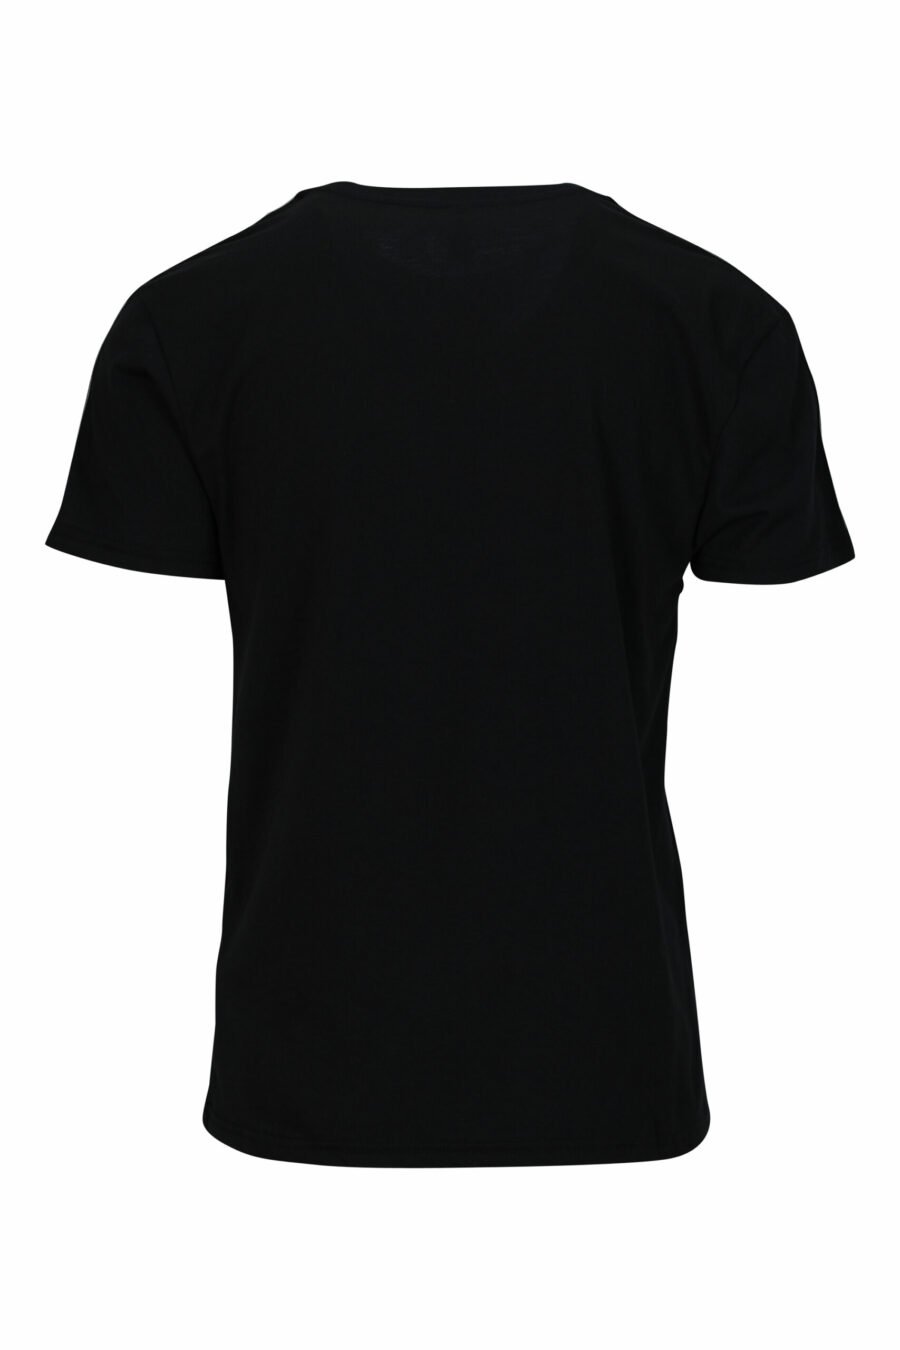 Camiseta negra con minilogo en cinta - 667113602967 1 scaled